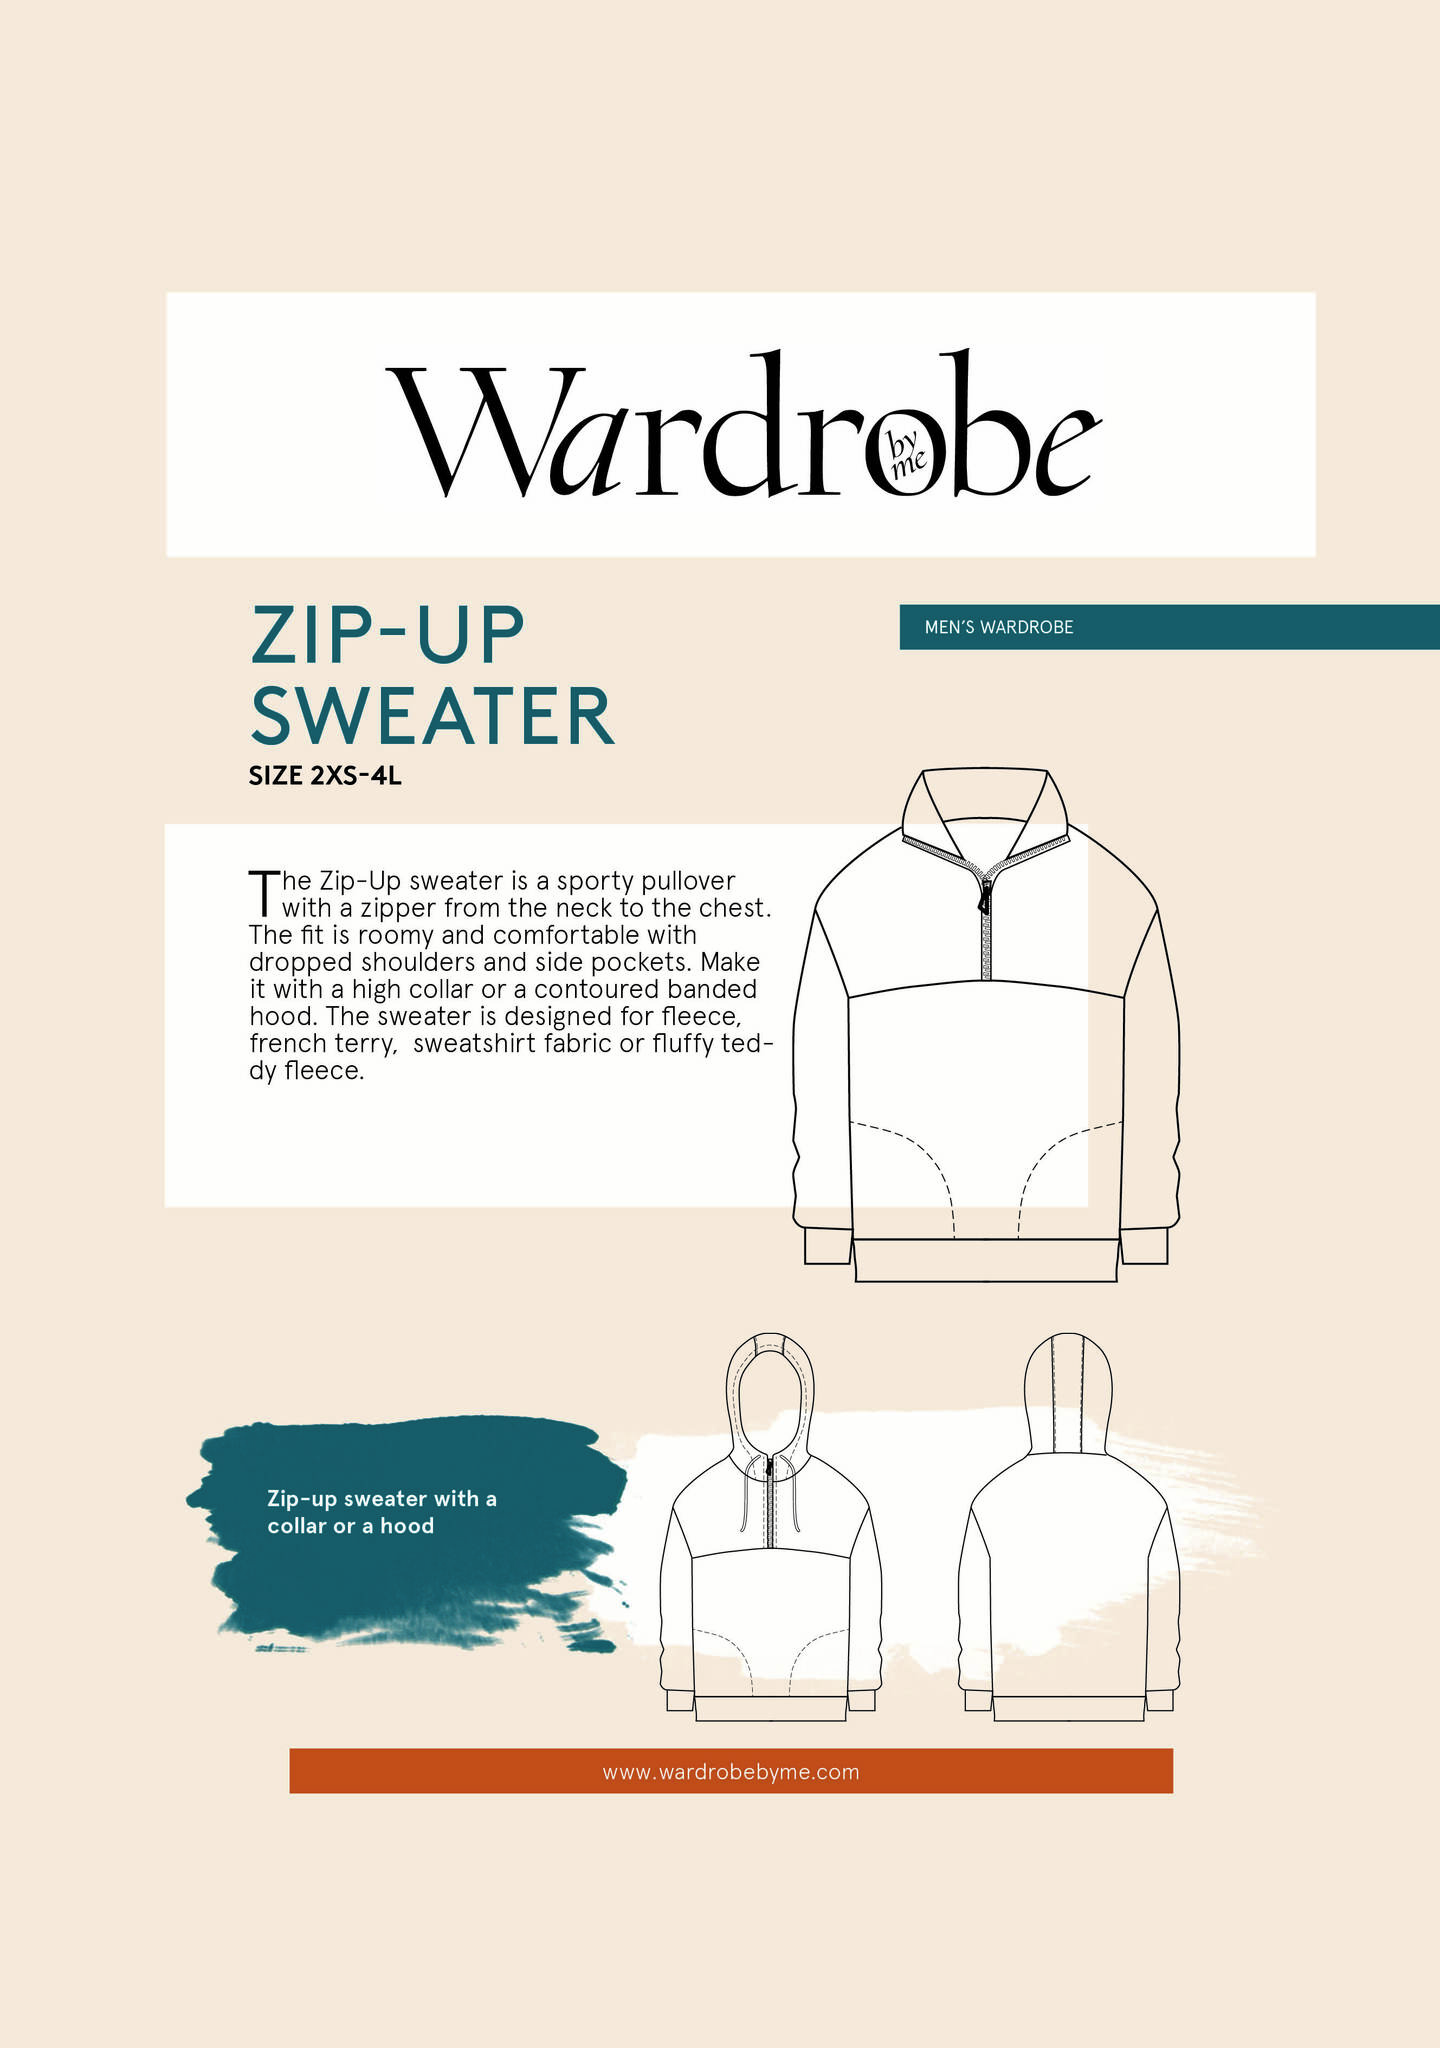 Zip-up Sweater